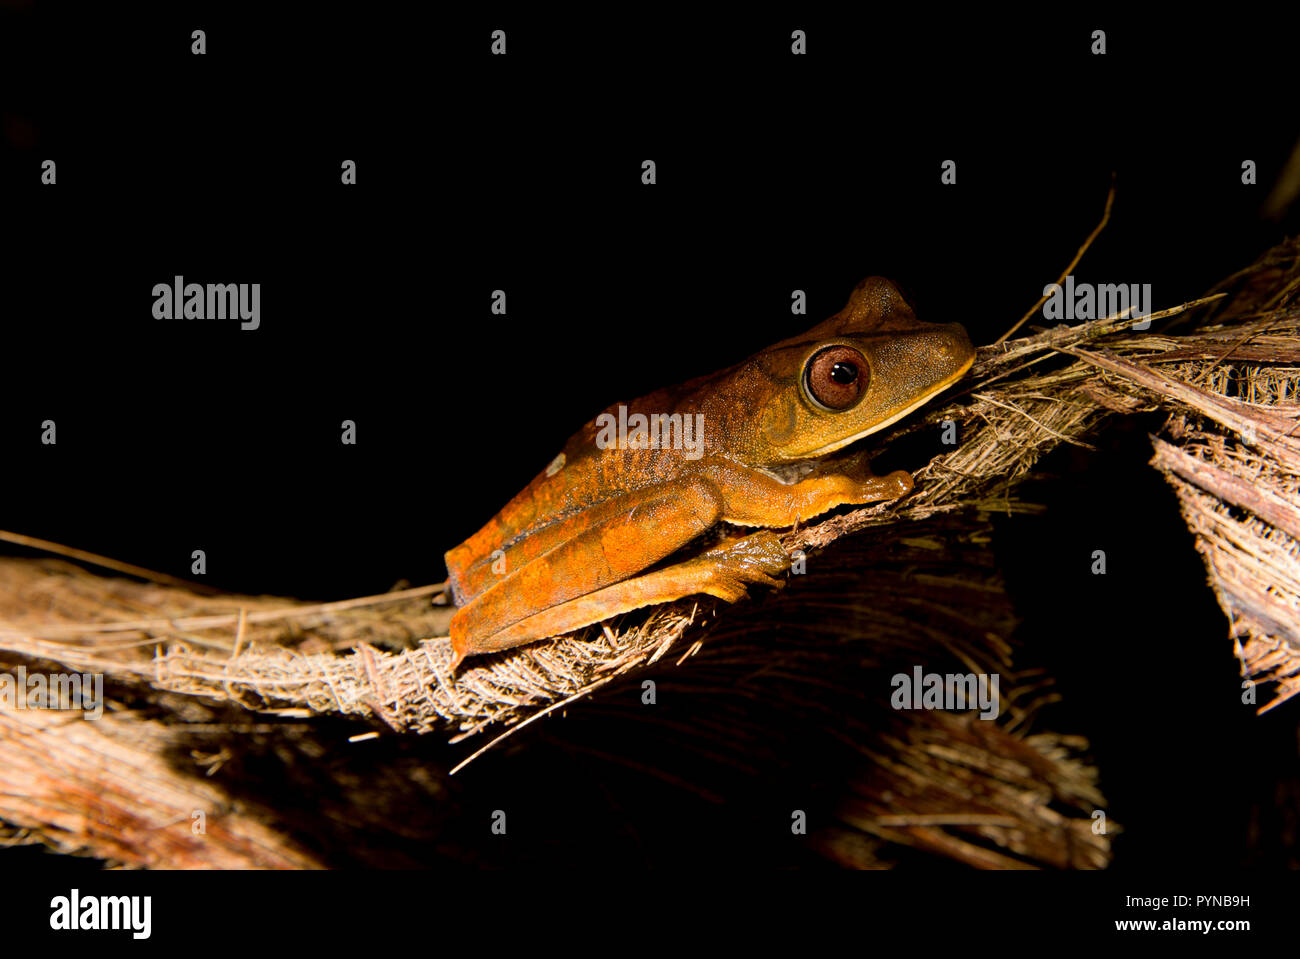 Ein laubfrosch im Dschungel von Suriname in der Nähe von Botapassie auf den Suriname Fluss fotografiert. Suriname ist für seine unberührte Regenwälder und biodive festgestellt Stockfoto